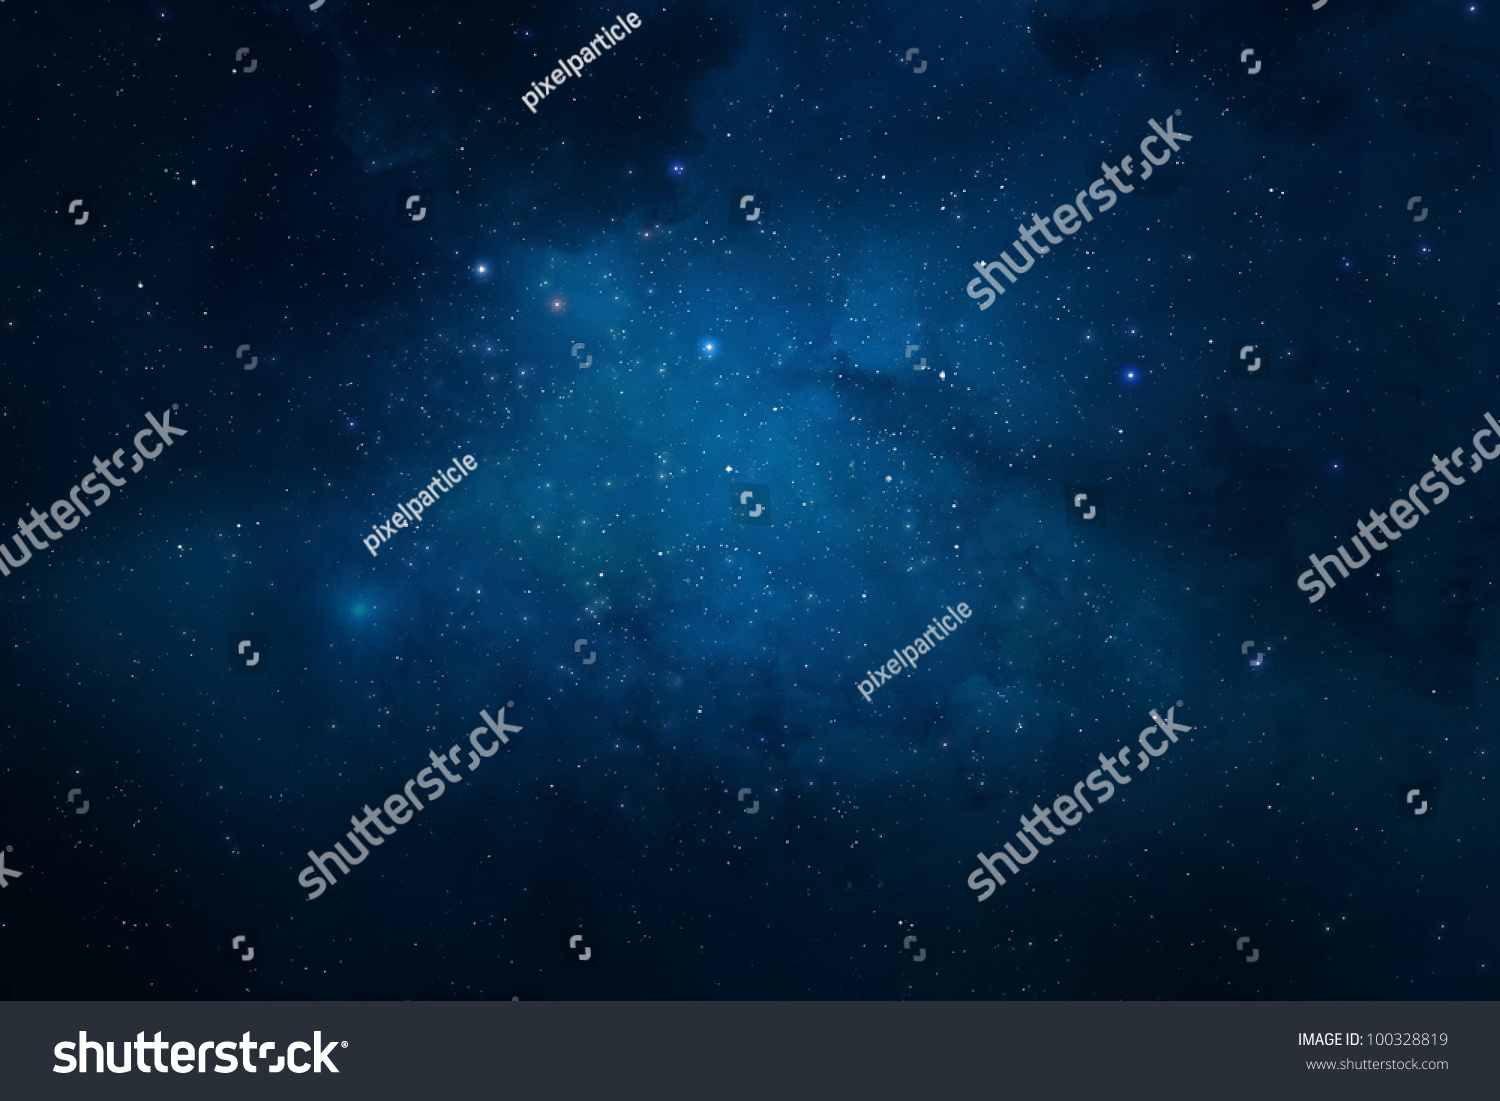 Universe Filled With Stars, Nebula And Galaxy Stock Photo 100328819 ...